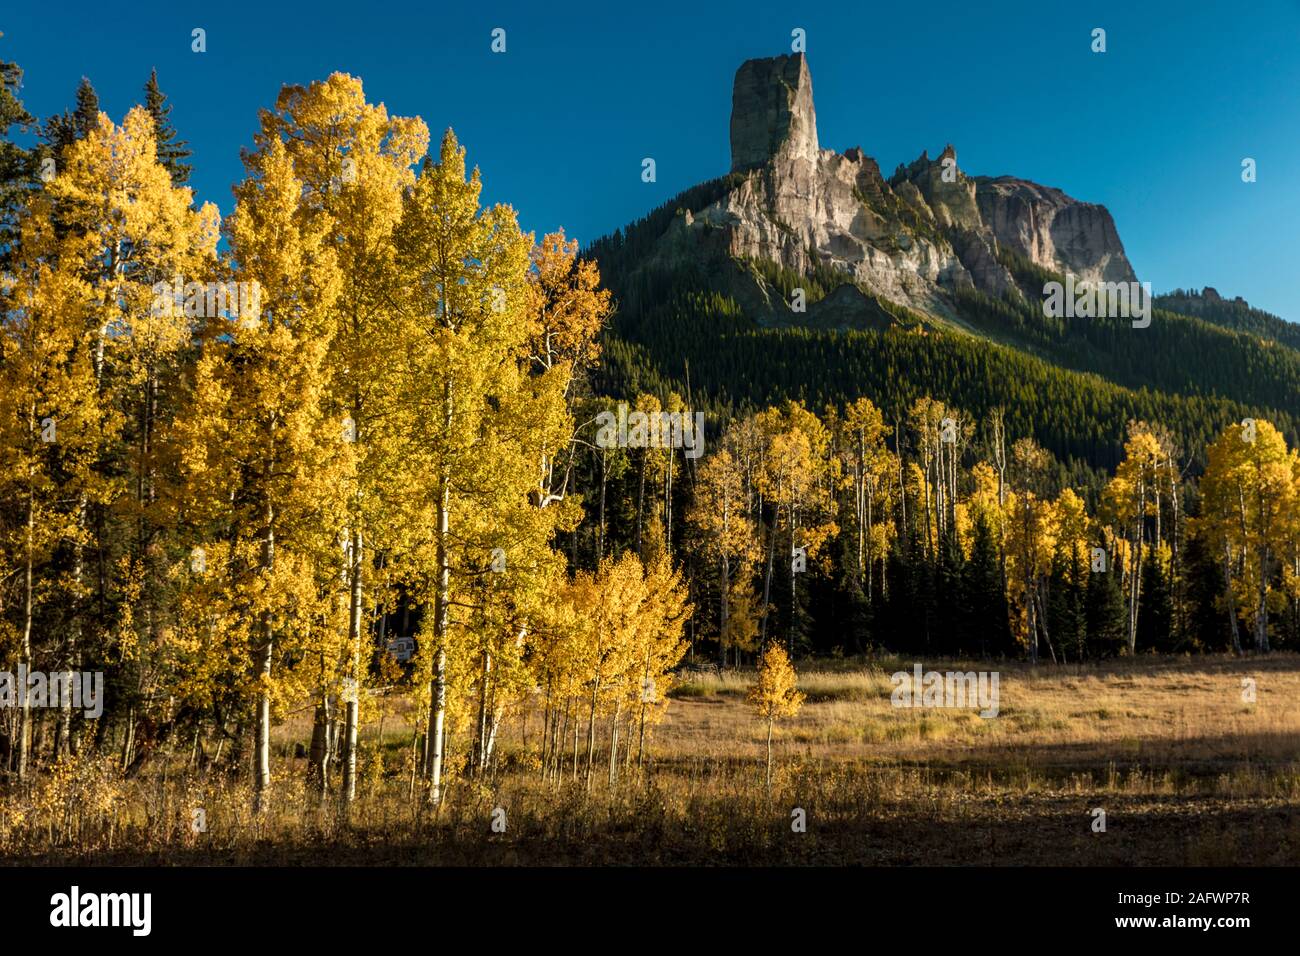 Le 7 octobre, RIDGWAY, Colorado, USA - Courthouse Peak Mountain à l'extérieur montre Colorado Ridgway Cimarron Montagnes en automne couleurs aspen Banque D'Images